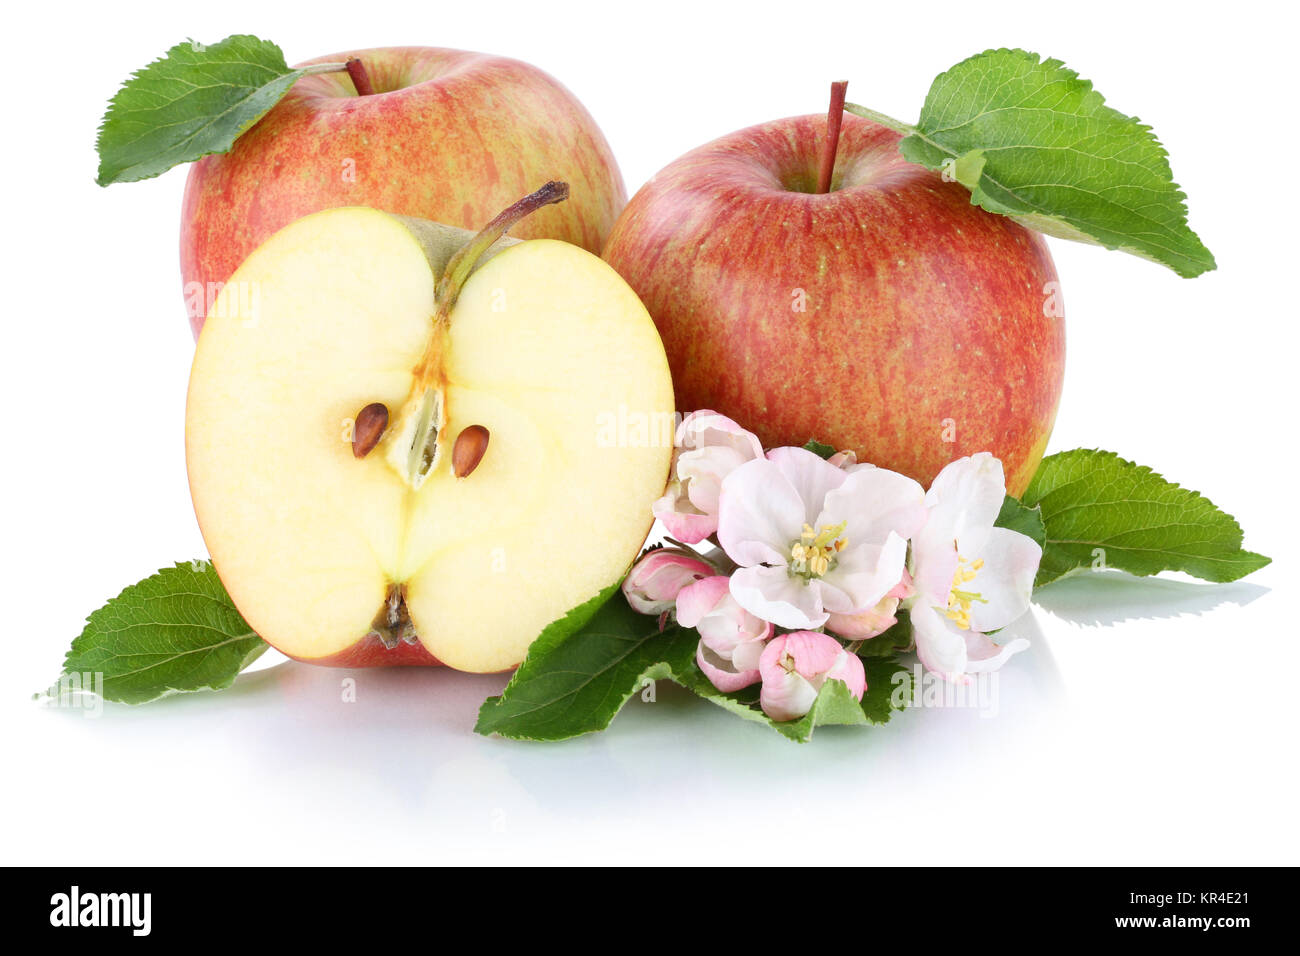 Apfel Äpfel Frucht frische Früchte Obst Freisteller freigestellt isoliert vor einem weissen Hintergrund Stock Photo